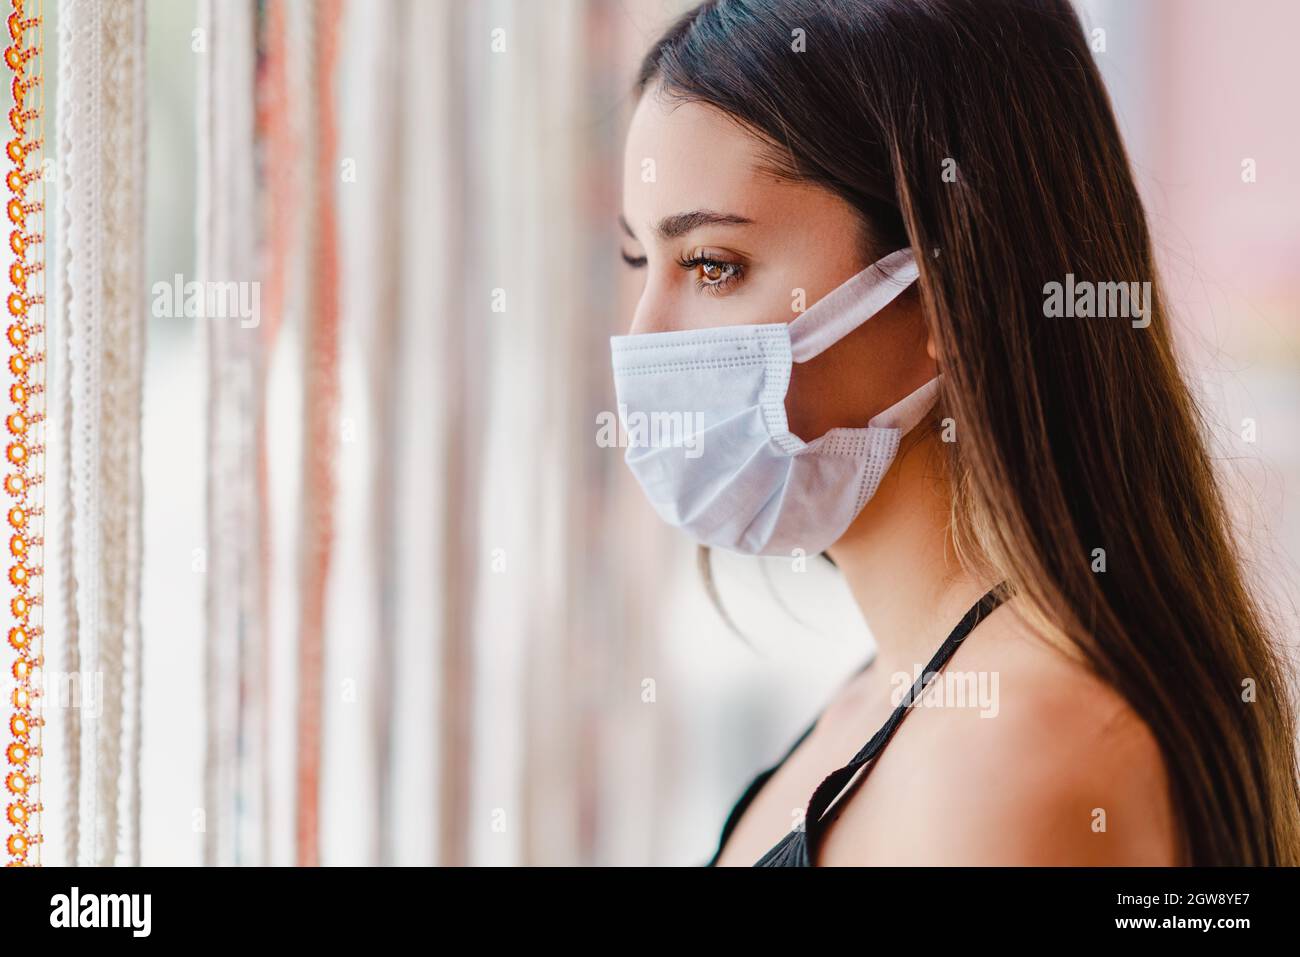 La jeune femme est debout et regarde de la fenêtre avec un masque de protection sur son visage. La rupture du virus Corona. Photo de haute qualité Banque D'Images